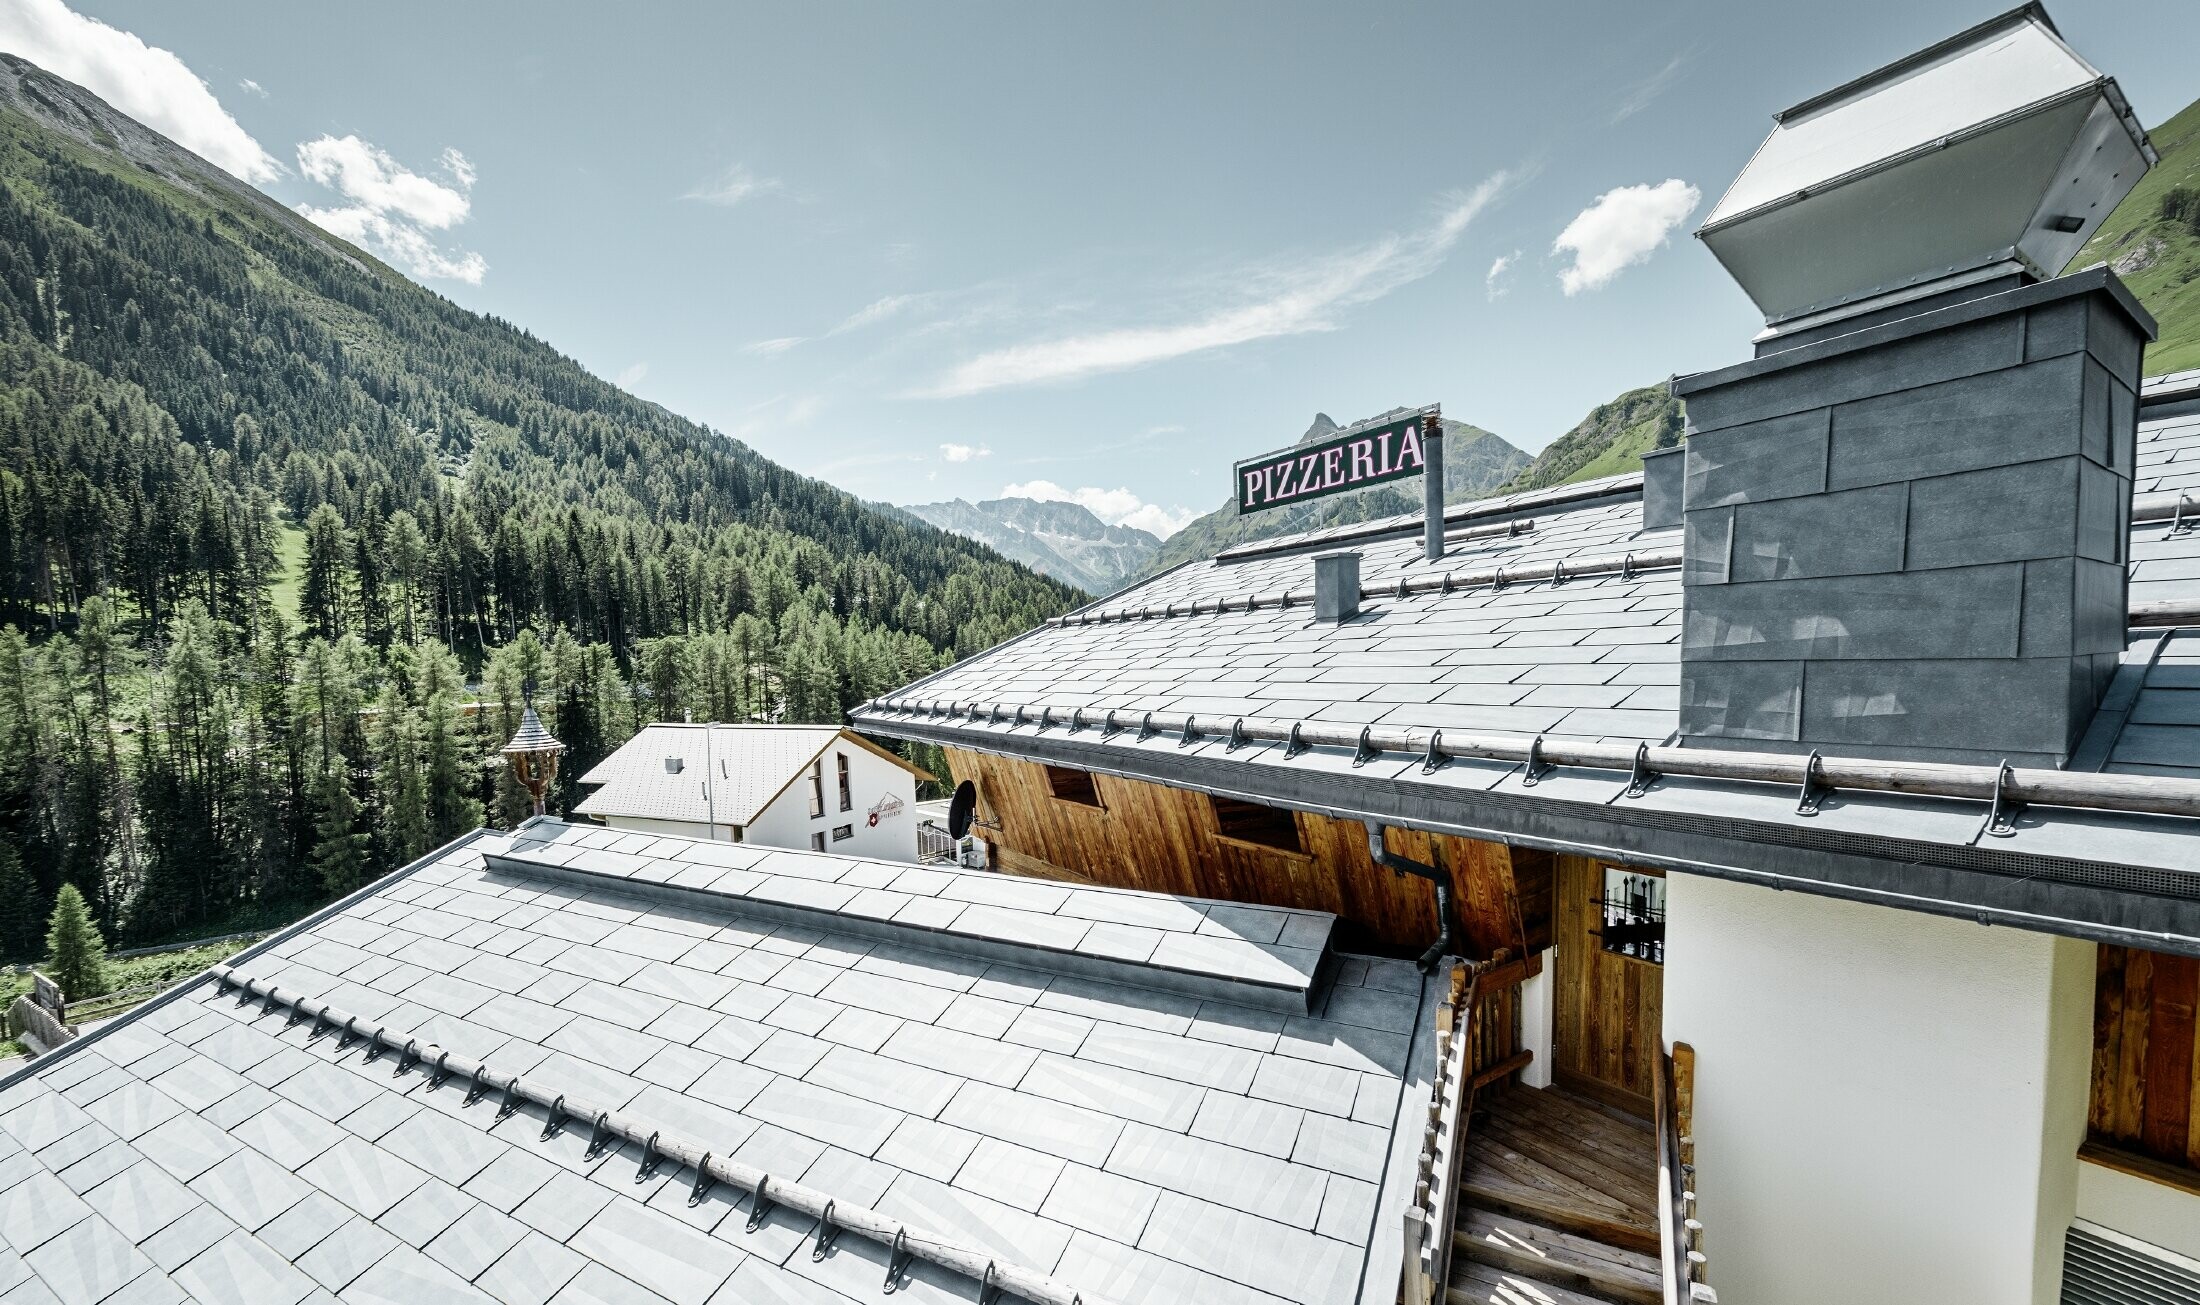 Restaurant Almrausch in bergdecor met FX.12 dakpanelen in steengrijs en sneeuwvangers op het dak